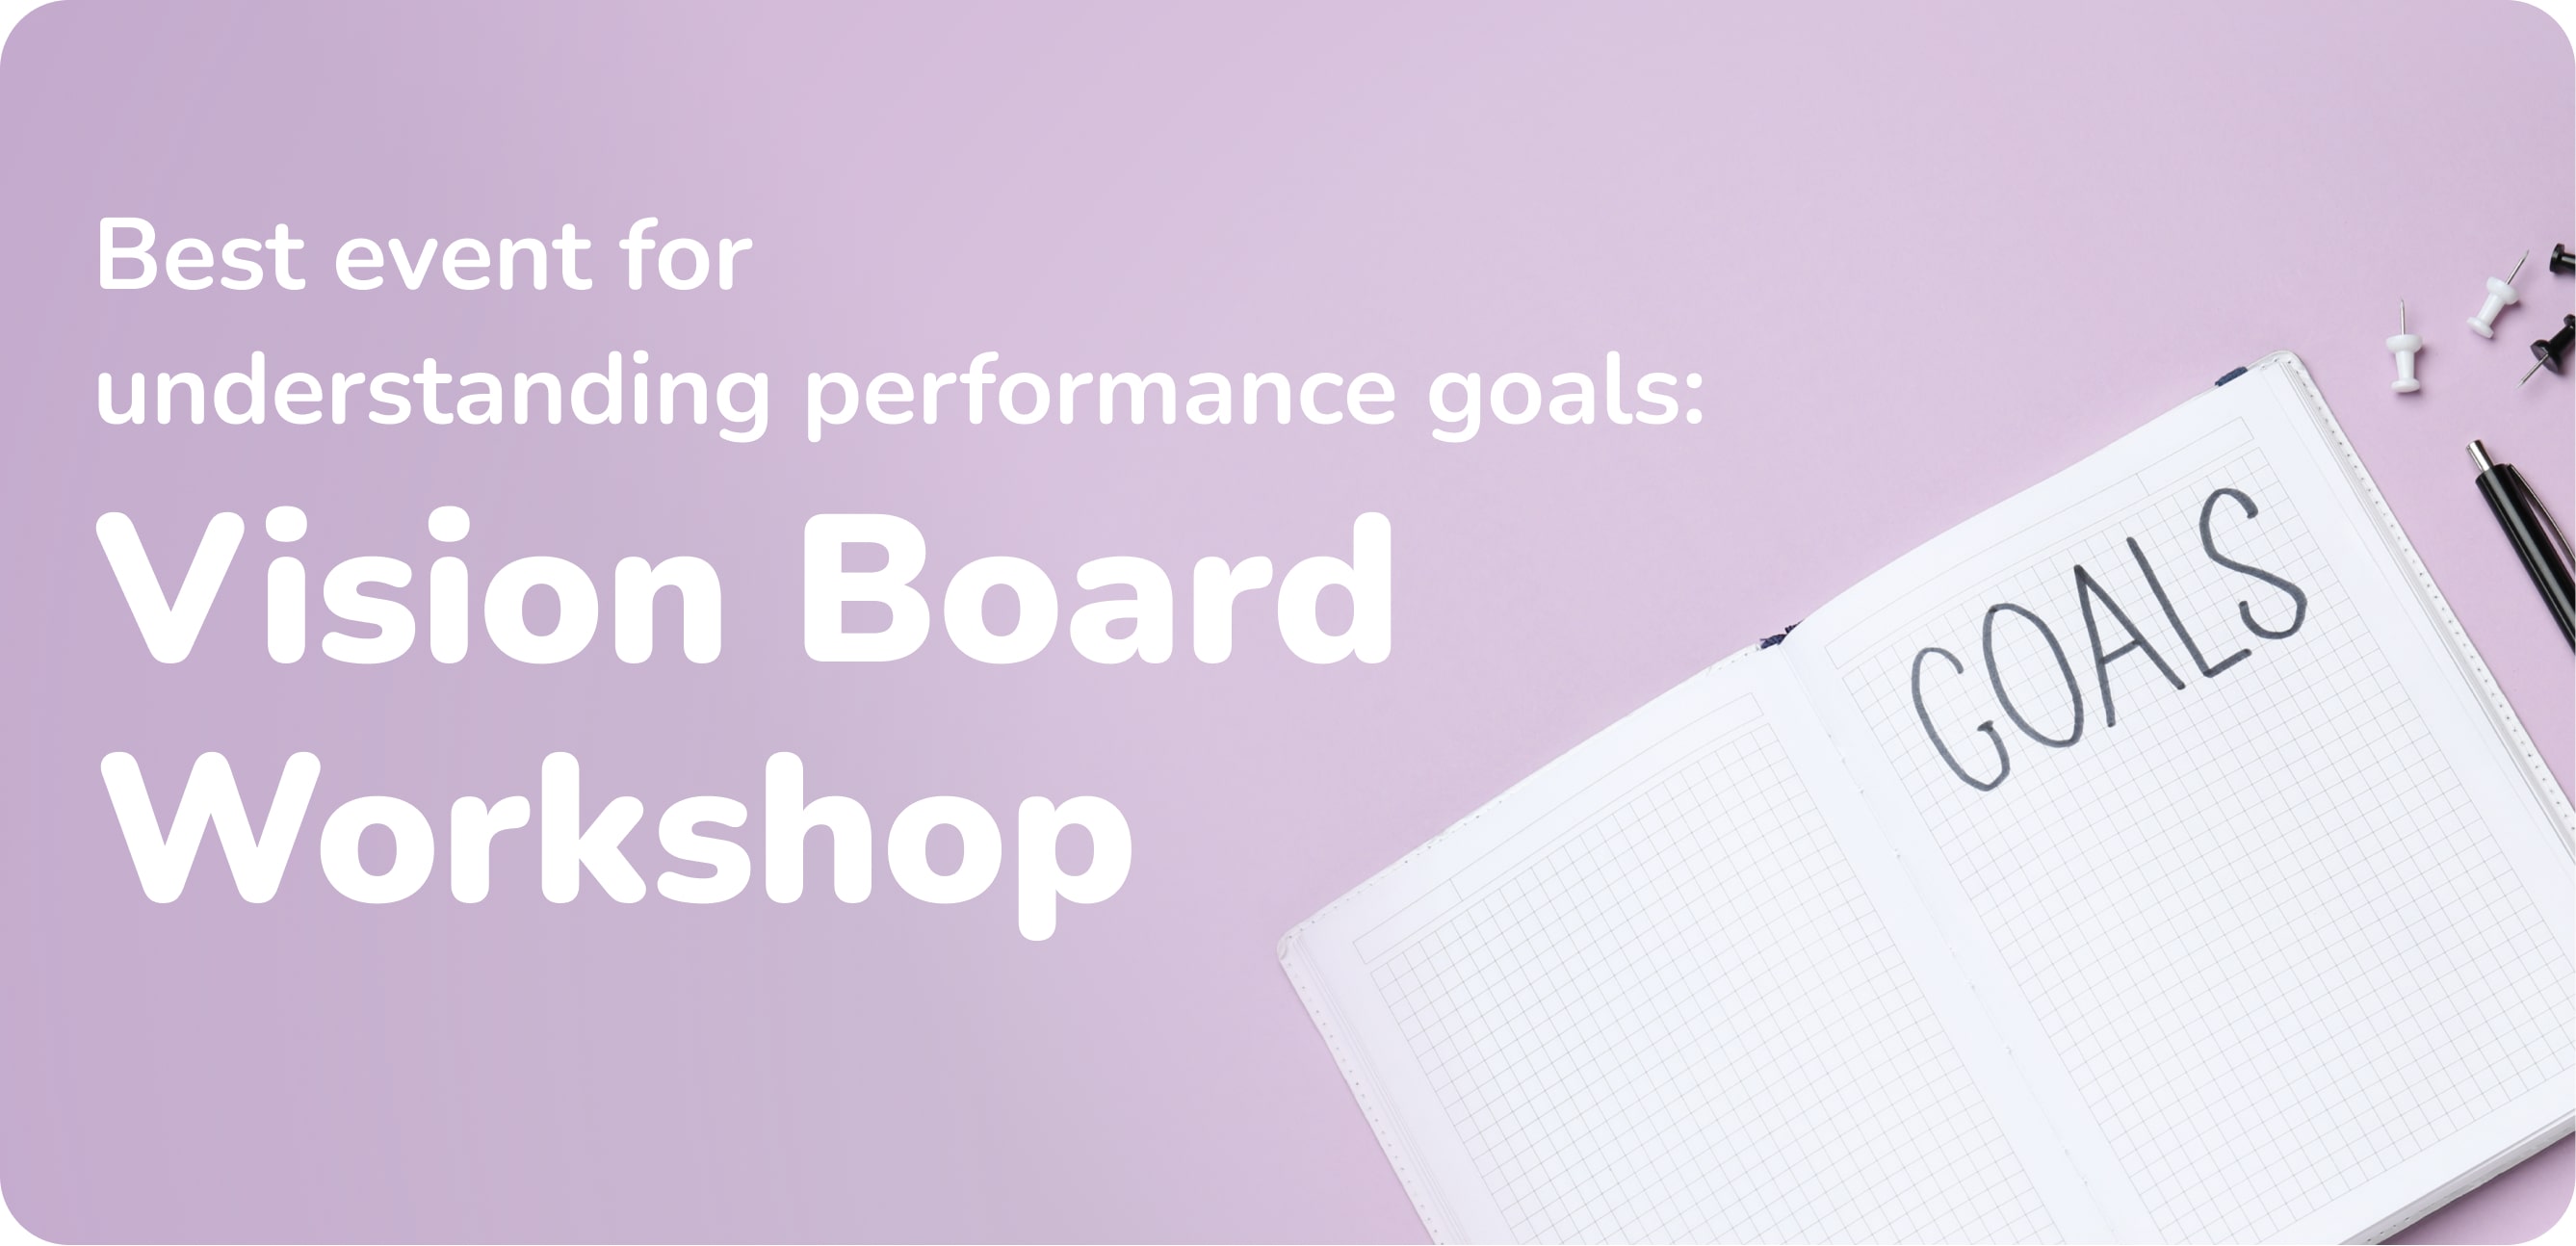 Best event for understanding performance goals: Vision Board Workshop